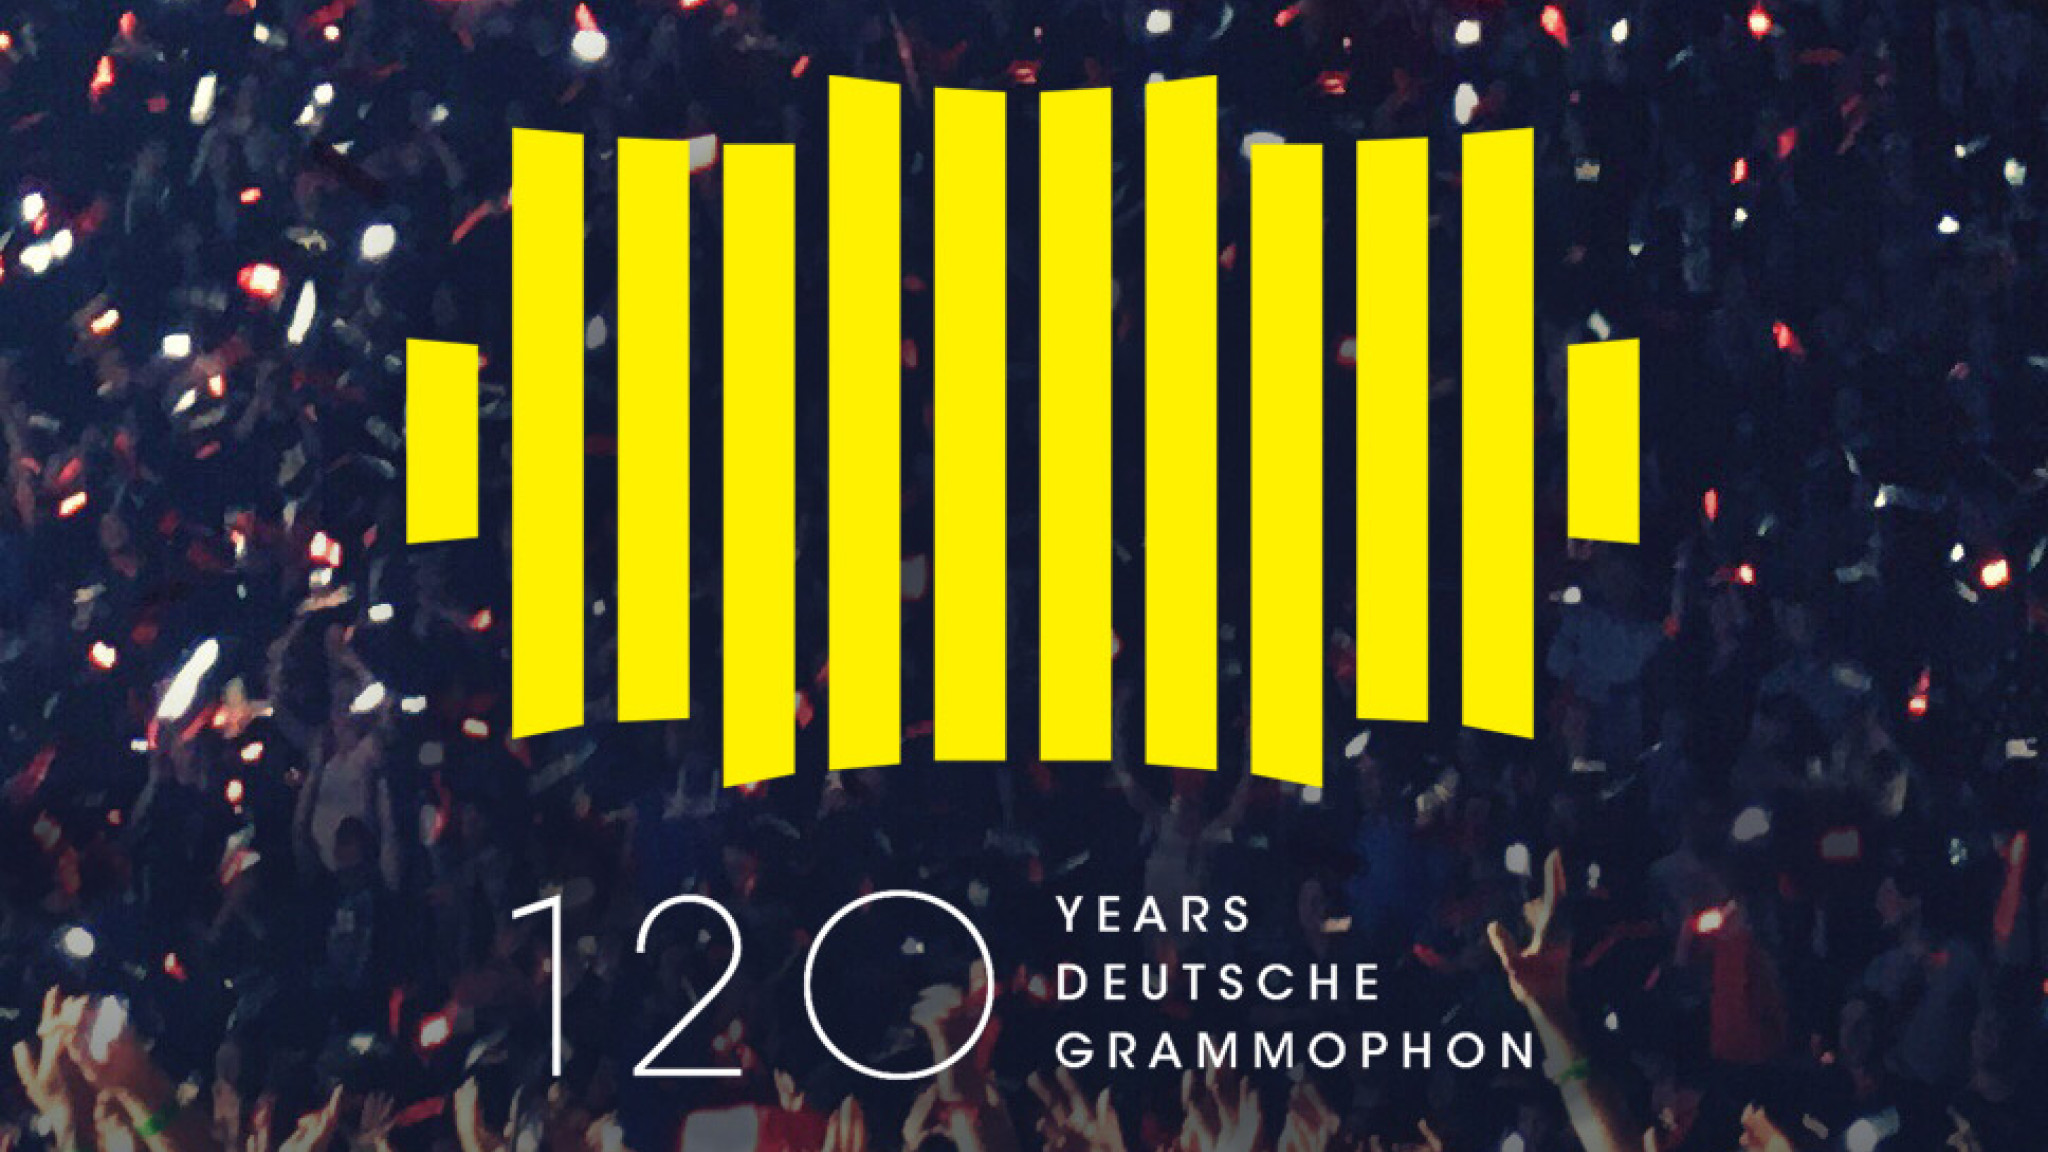 Festkonzert im Livestream - Deutsche Grammophon feiert 120 Jahre in der Berliner Philharmonie